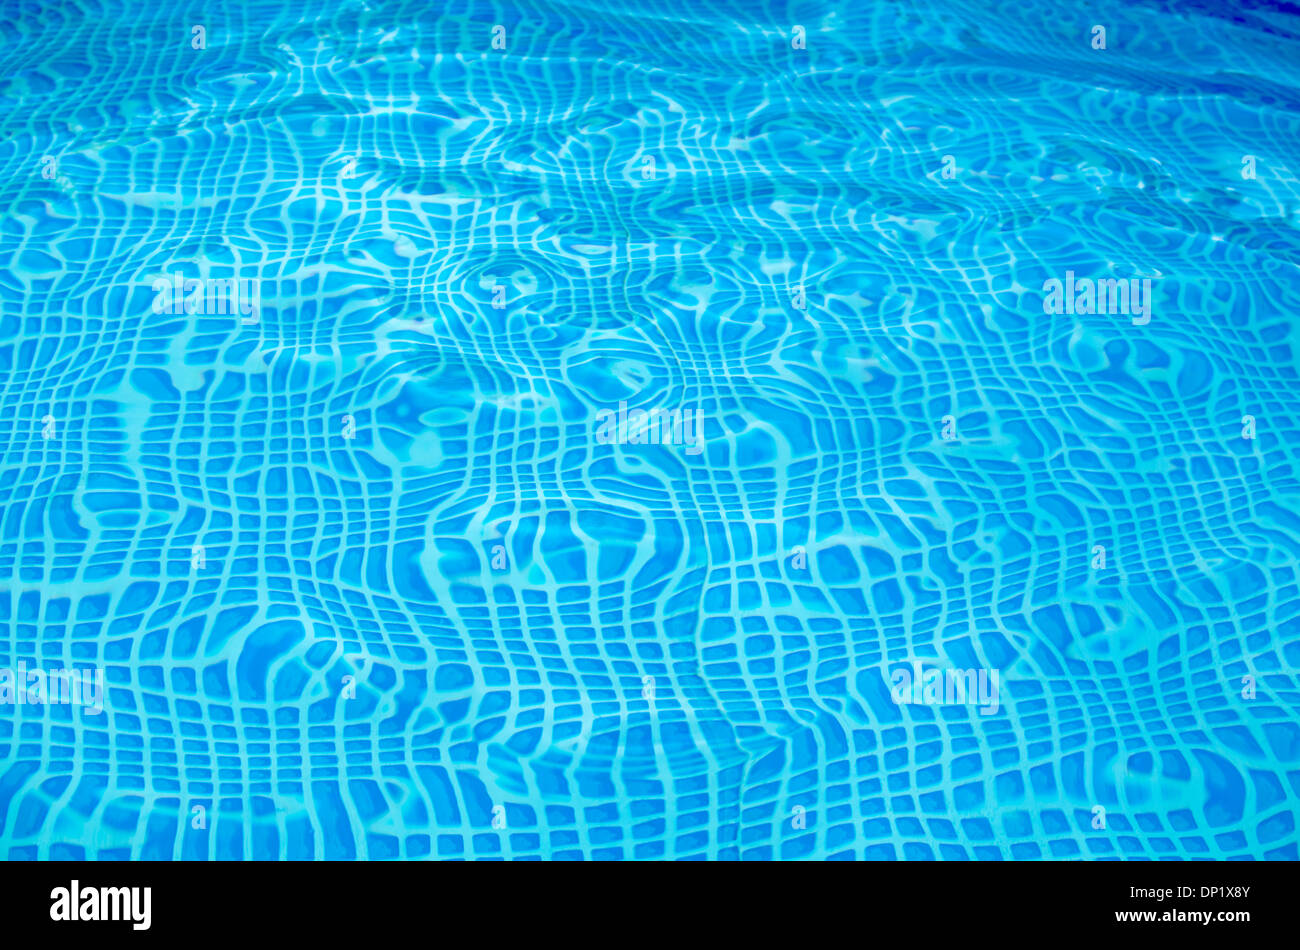 Abstrakt blau aufgegebenes unten einen welligen Pool 1 Stockfoto